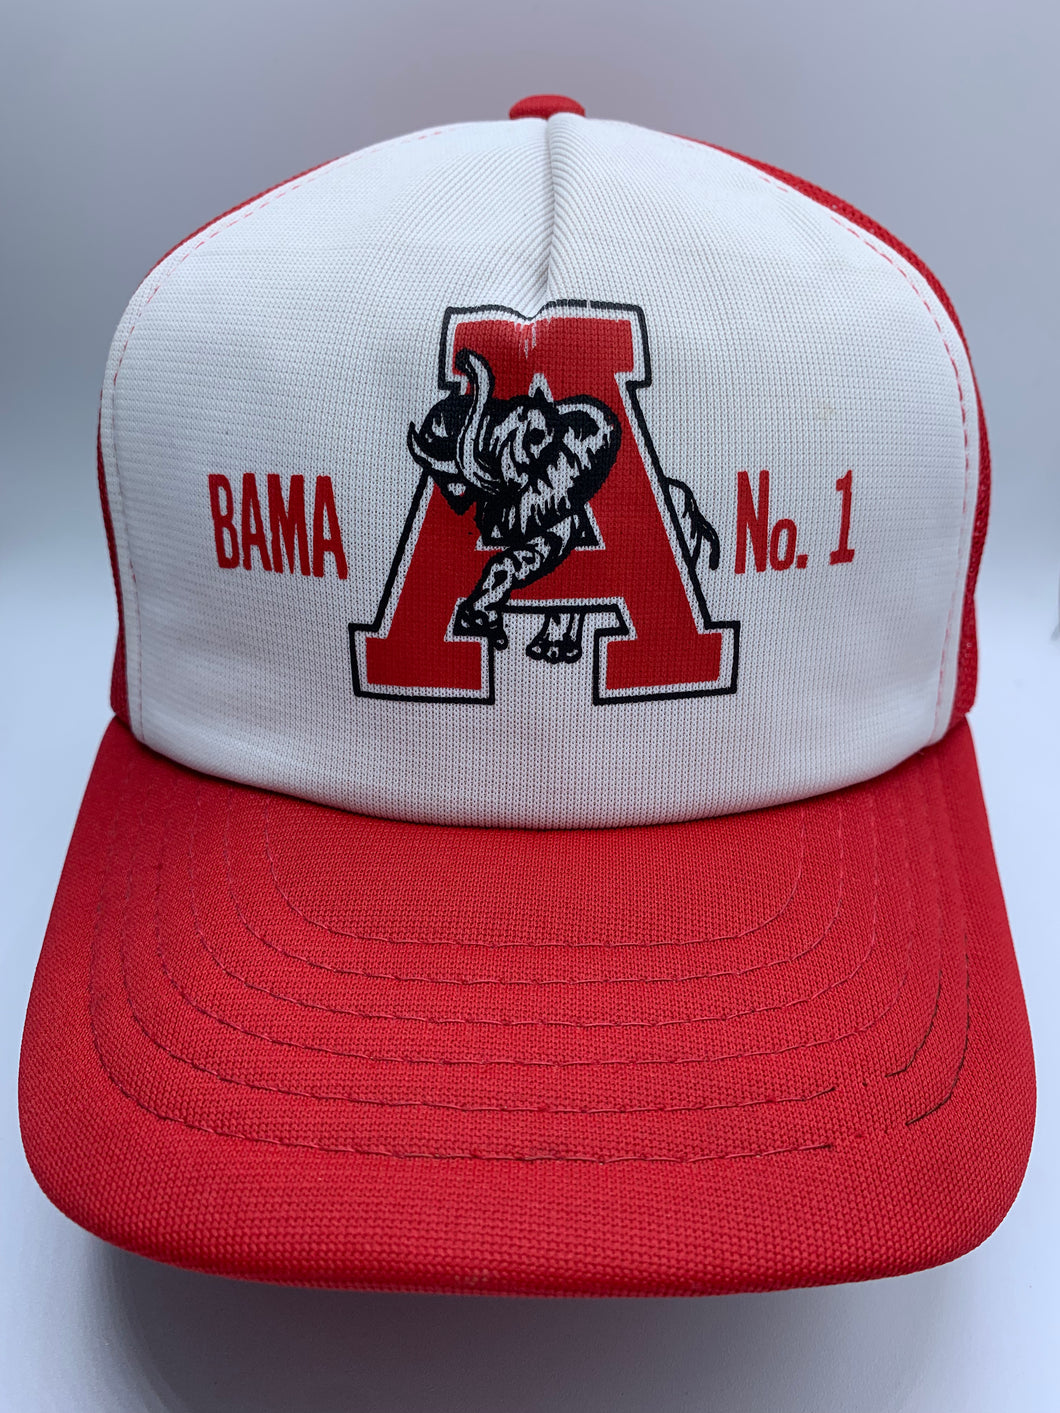 Vintage Alabama Number 1 Trucker Snapback Hat